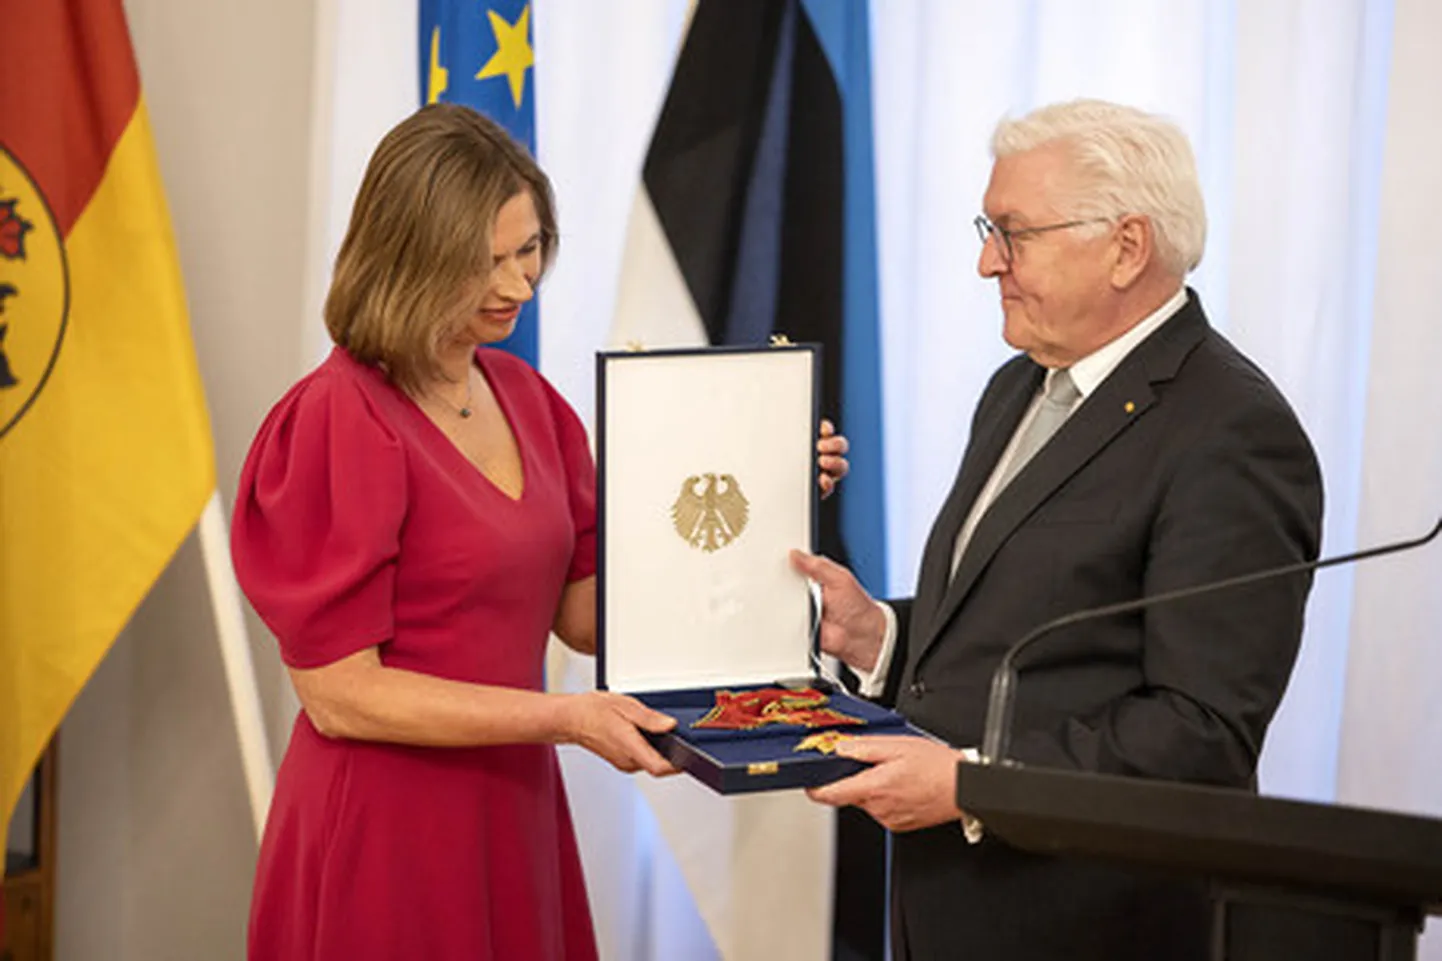 Президент Германии Франк-Вальтер Штайнмайер наградил Керсти Кальюлайд высшим знаком за заслуги перед ФРГ.